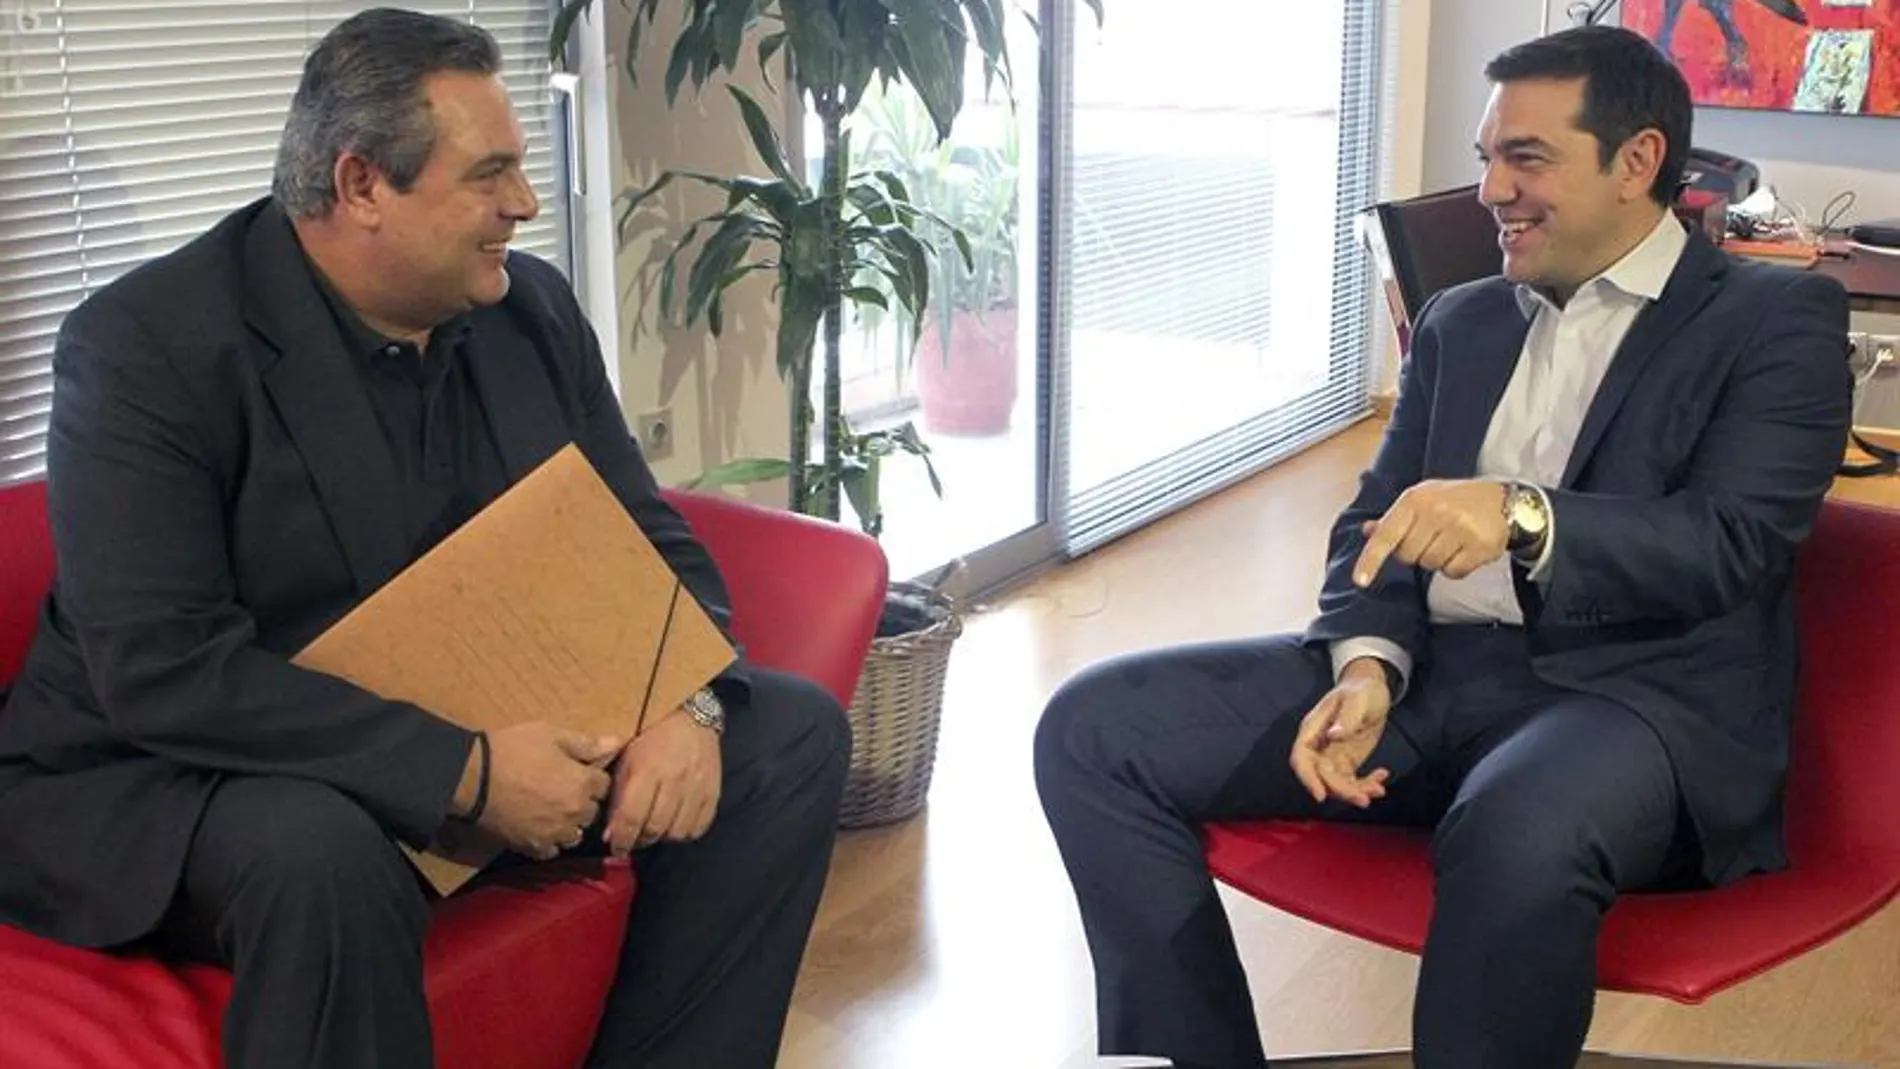 El líder de Syriza Alexis Tsipras recibe al líder de Griegos Independientes